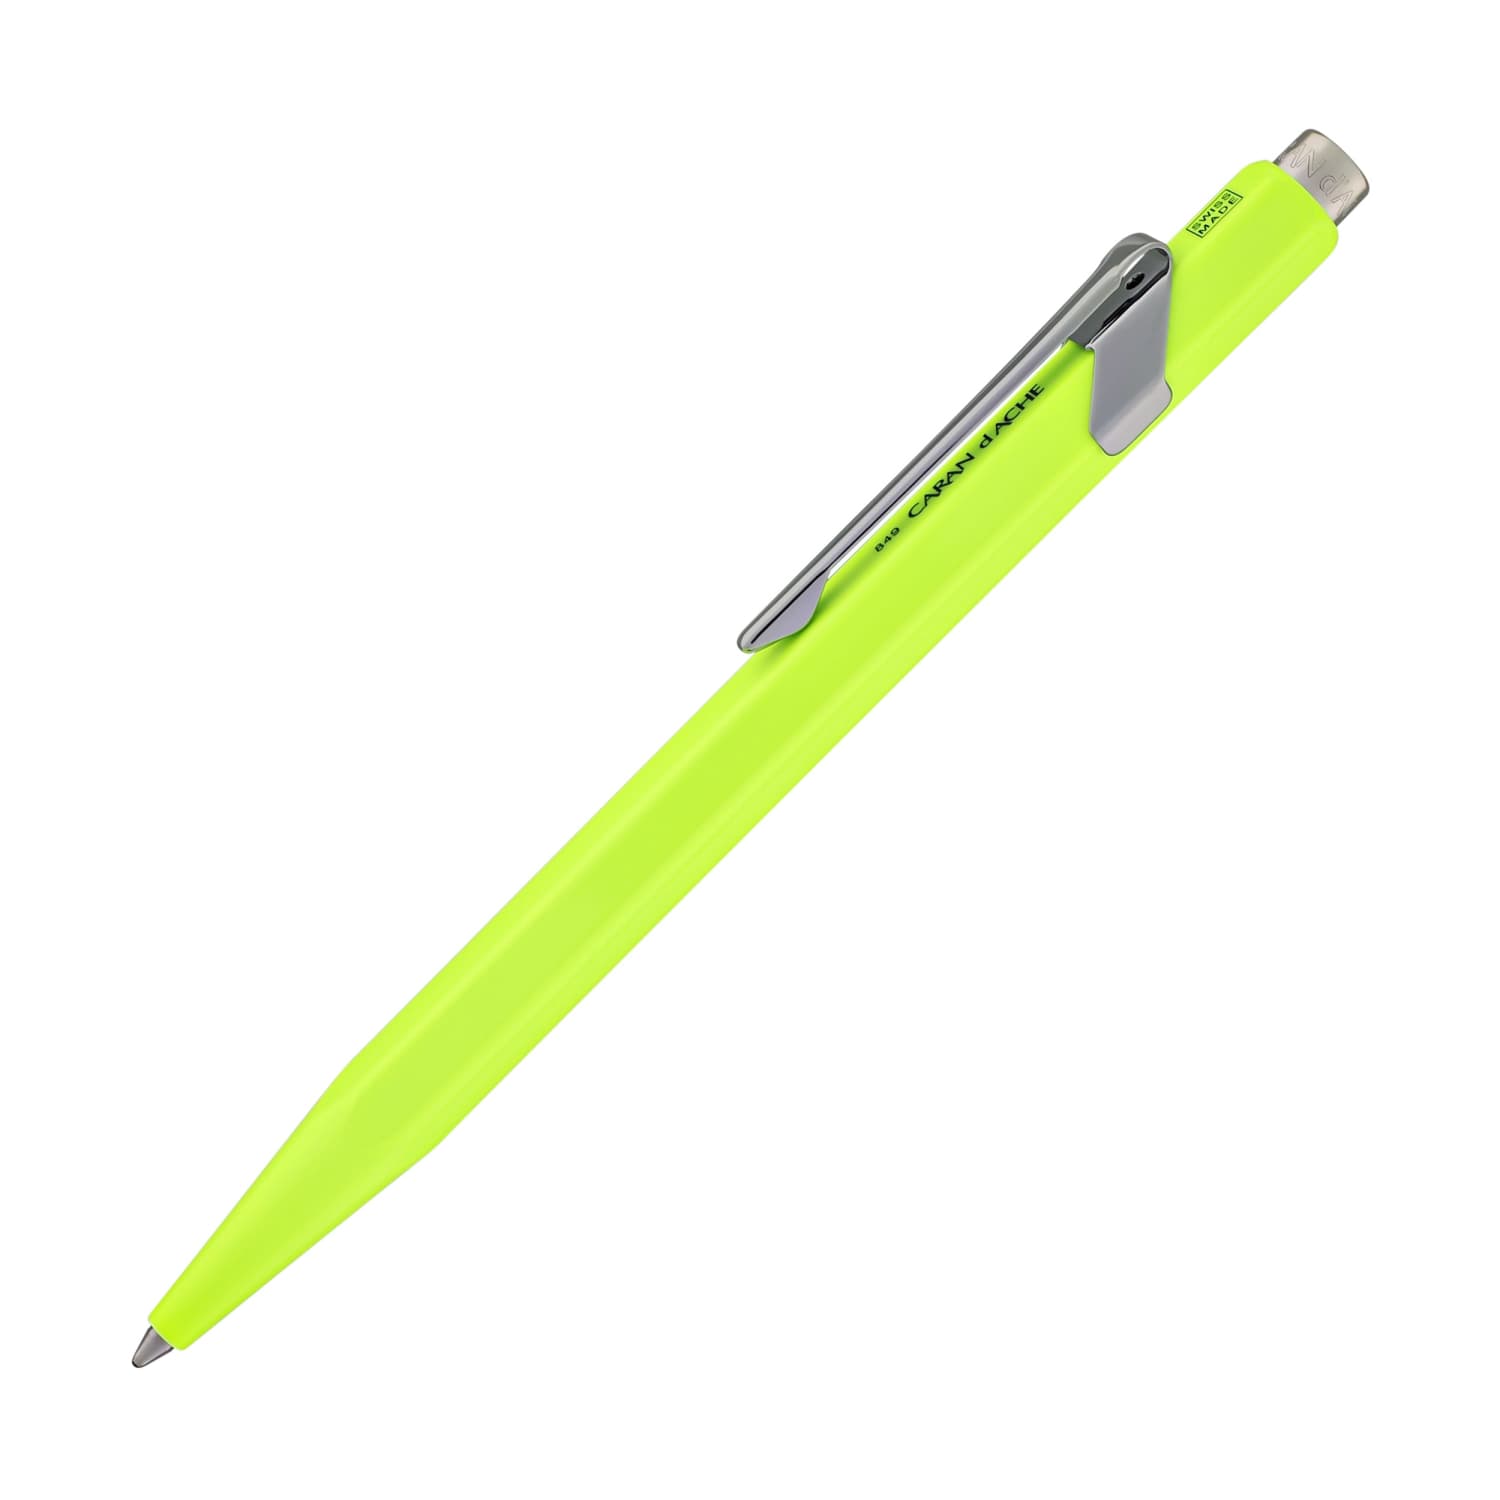 Caran d'Ache 849 Metal Ballpoint Pen in Fluorescent Yellow - Goldspot Pens